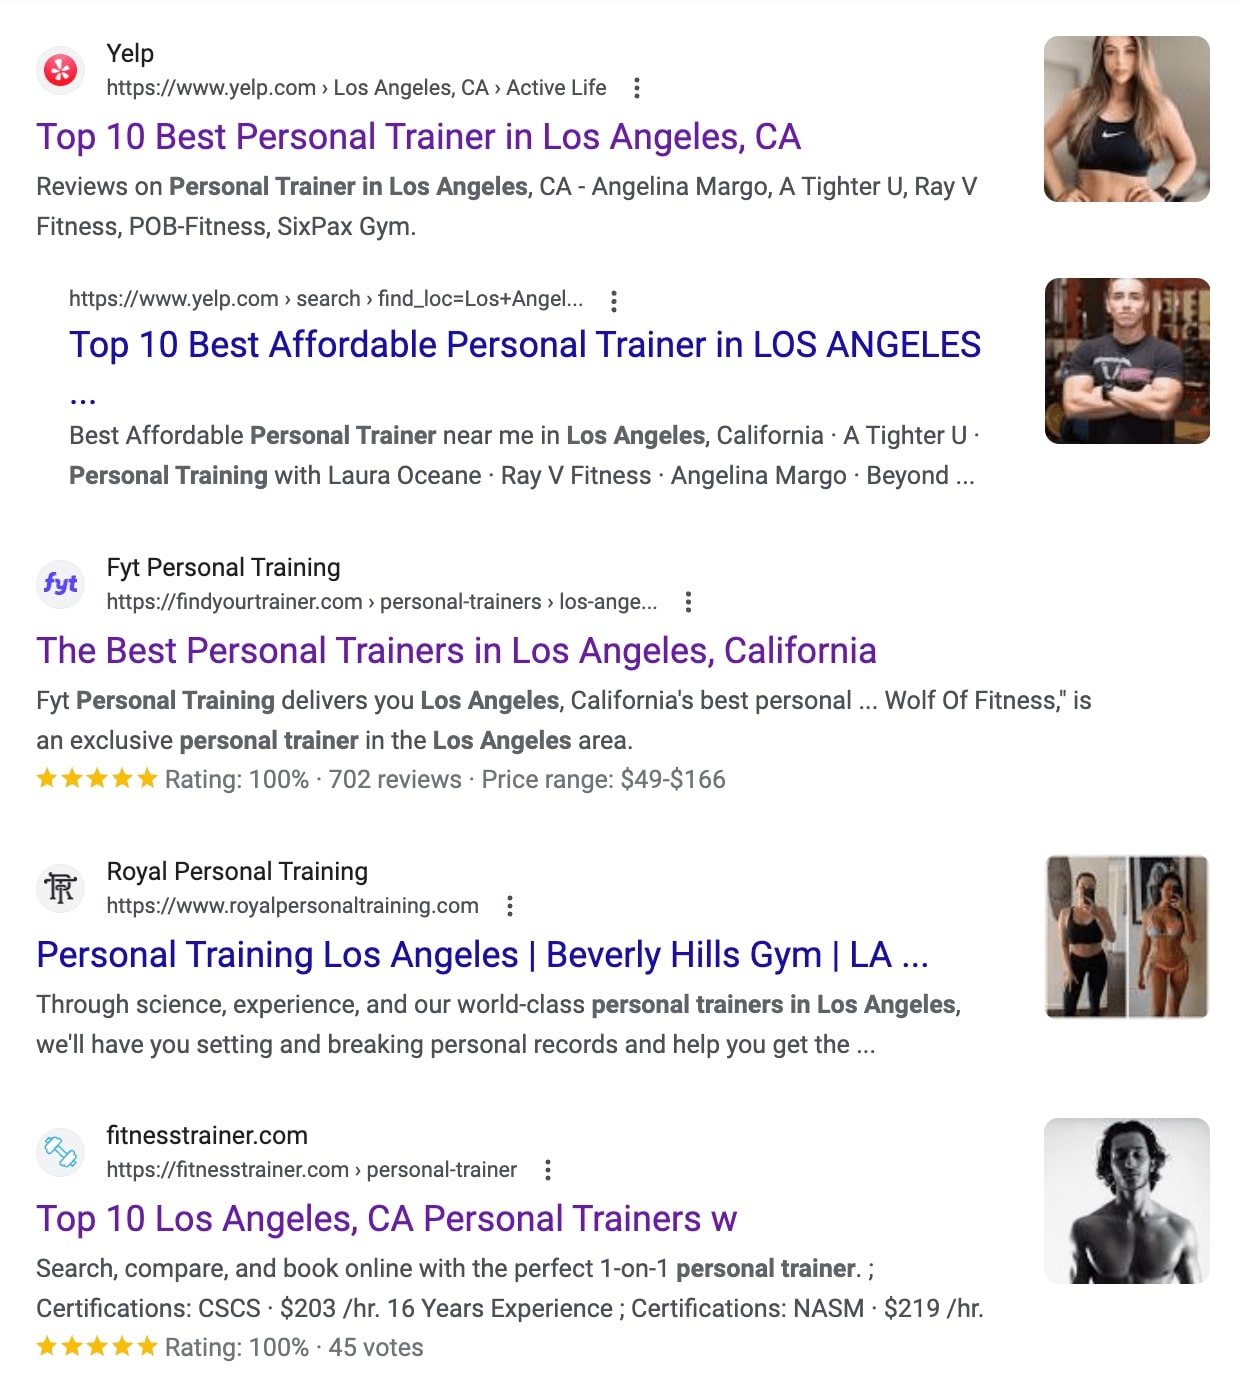 ریفرل ٹریفک کیا ہے؟ "لاس اینجلس میں ذاتی ٹرینر" کے لیے گوگل کے سرفہرست تلاش کے نتائج